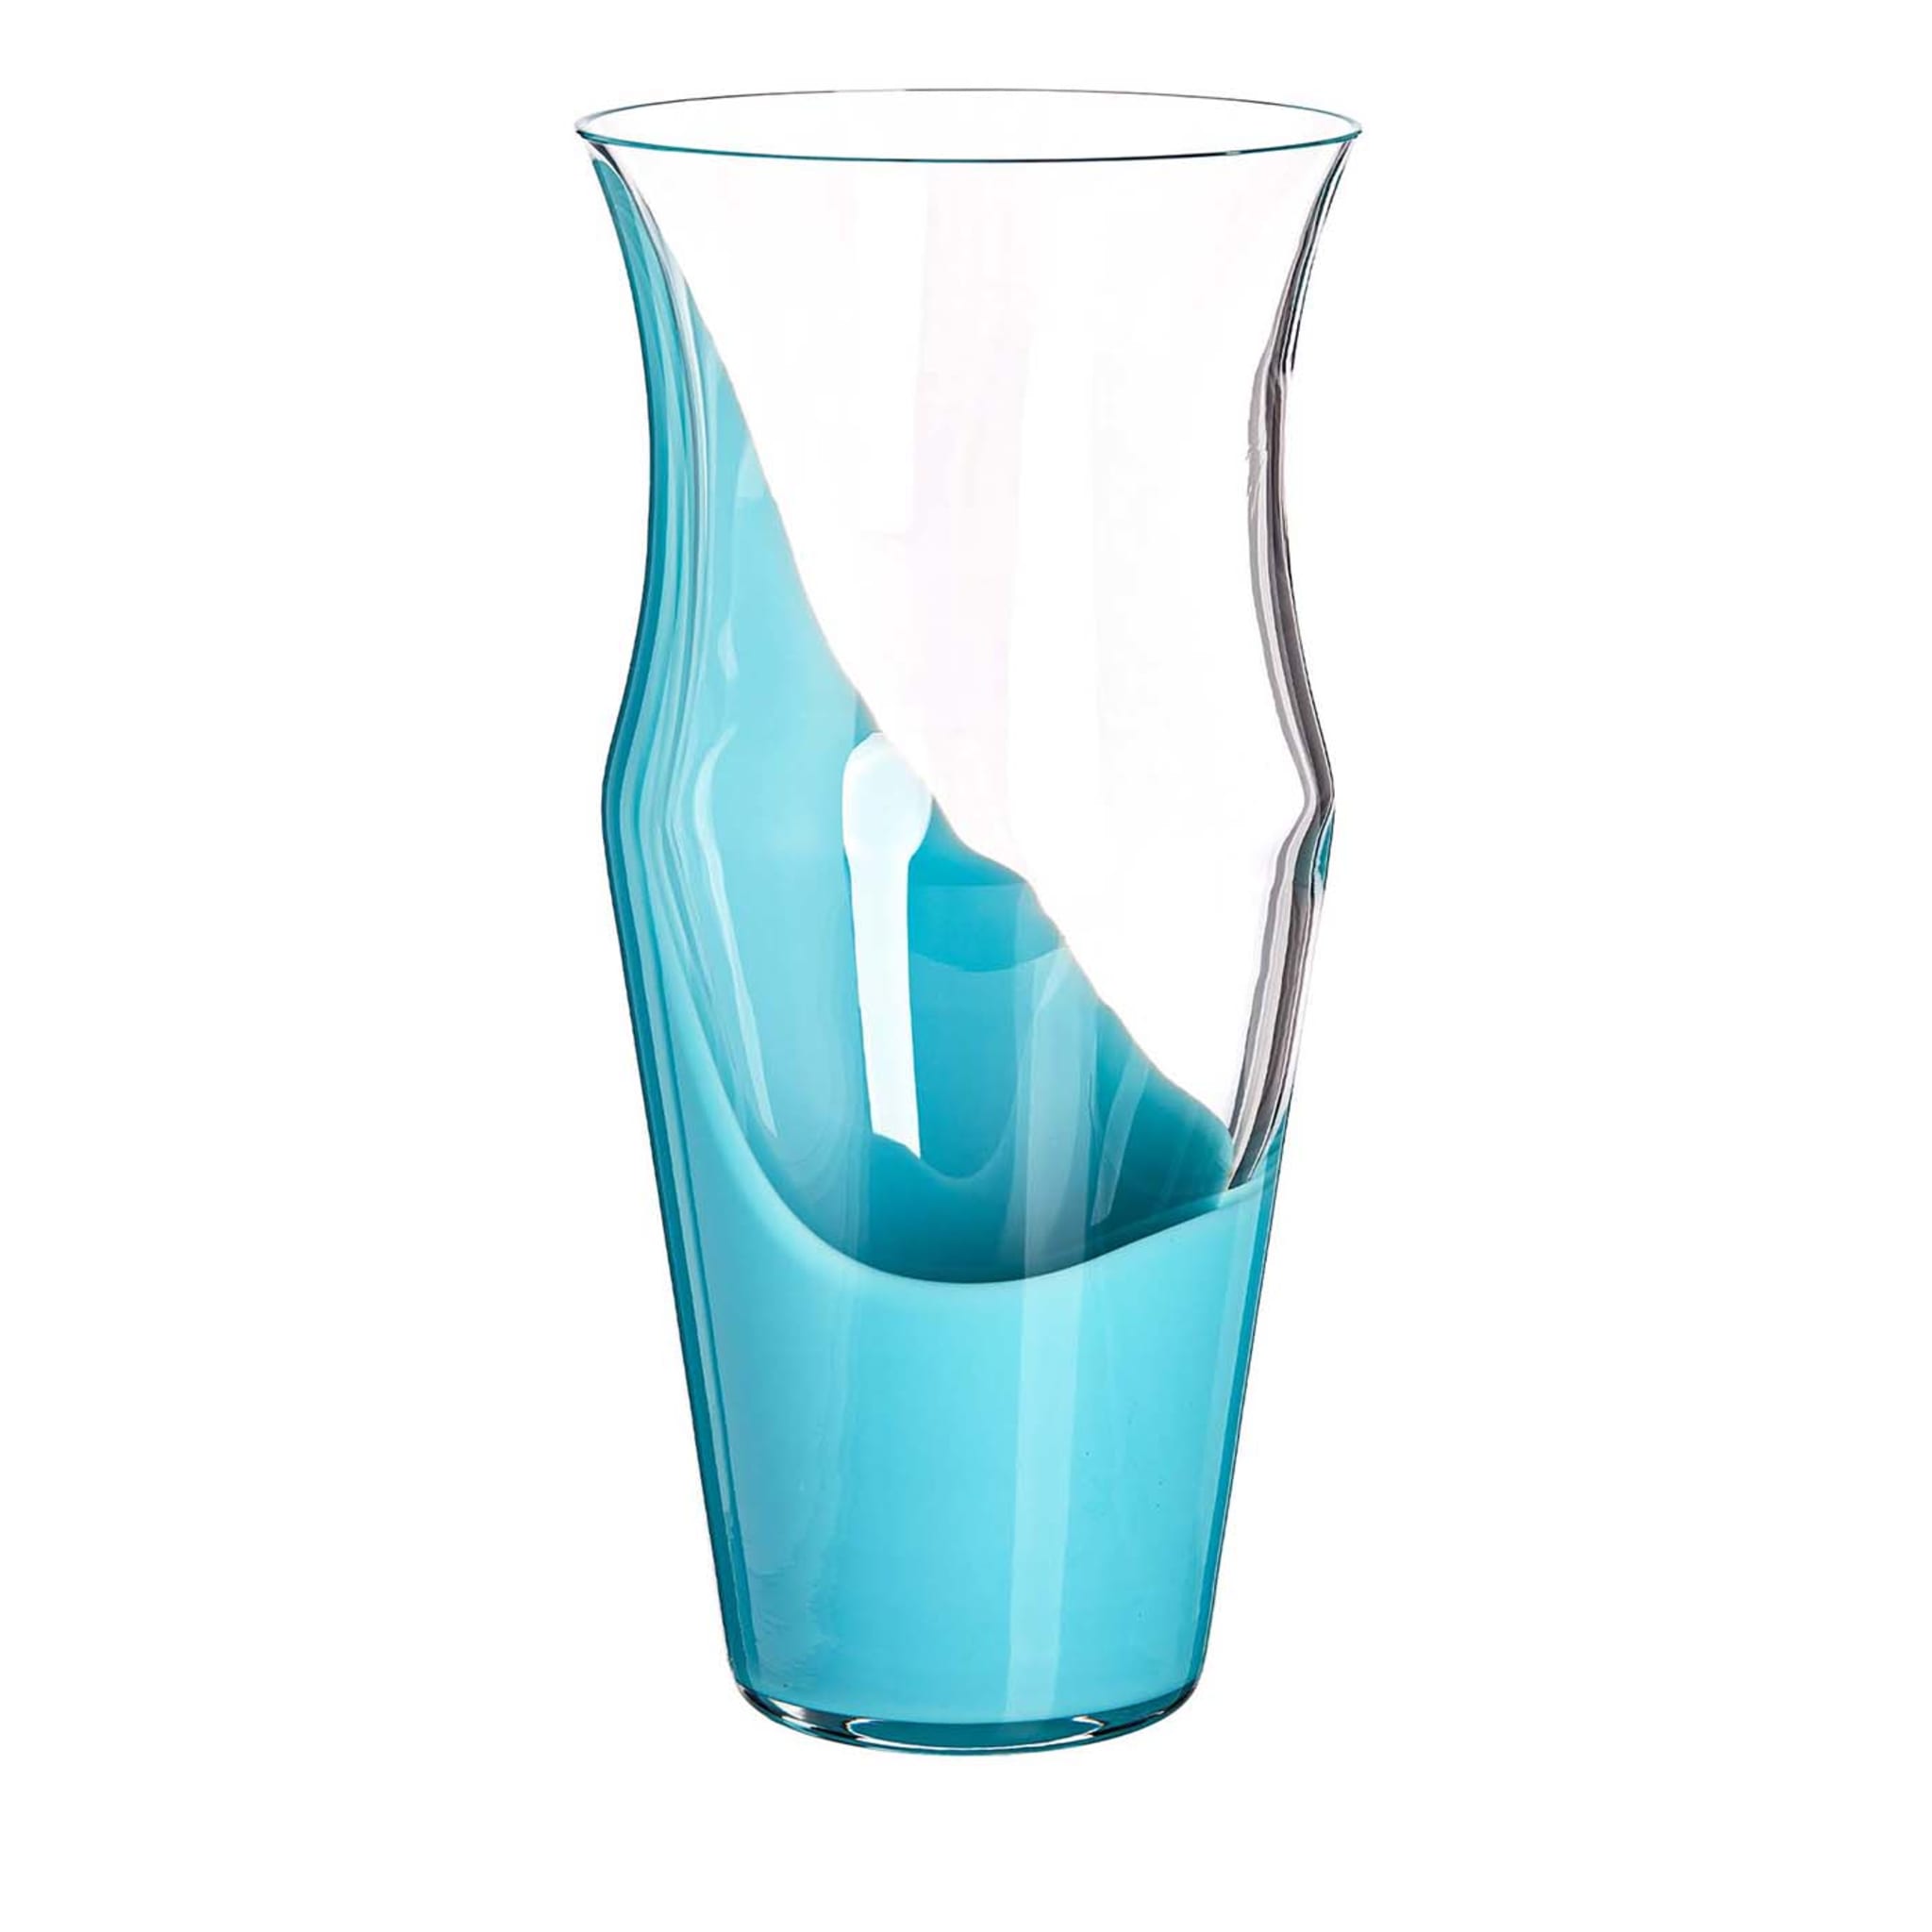 Tealfarbene und transparente Monocromo-Vase von Carlo Moretti - Hauptansicht